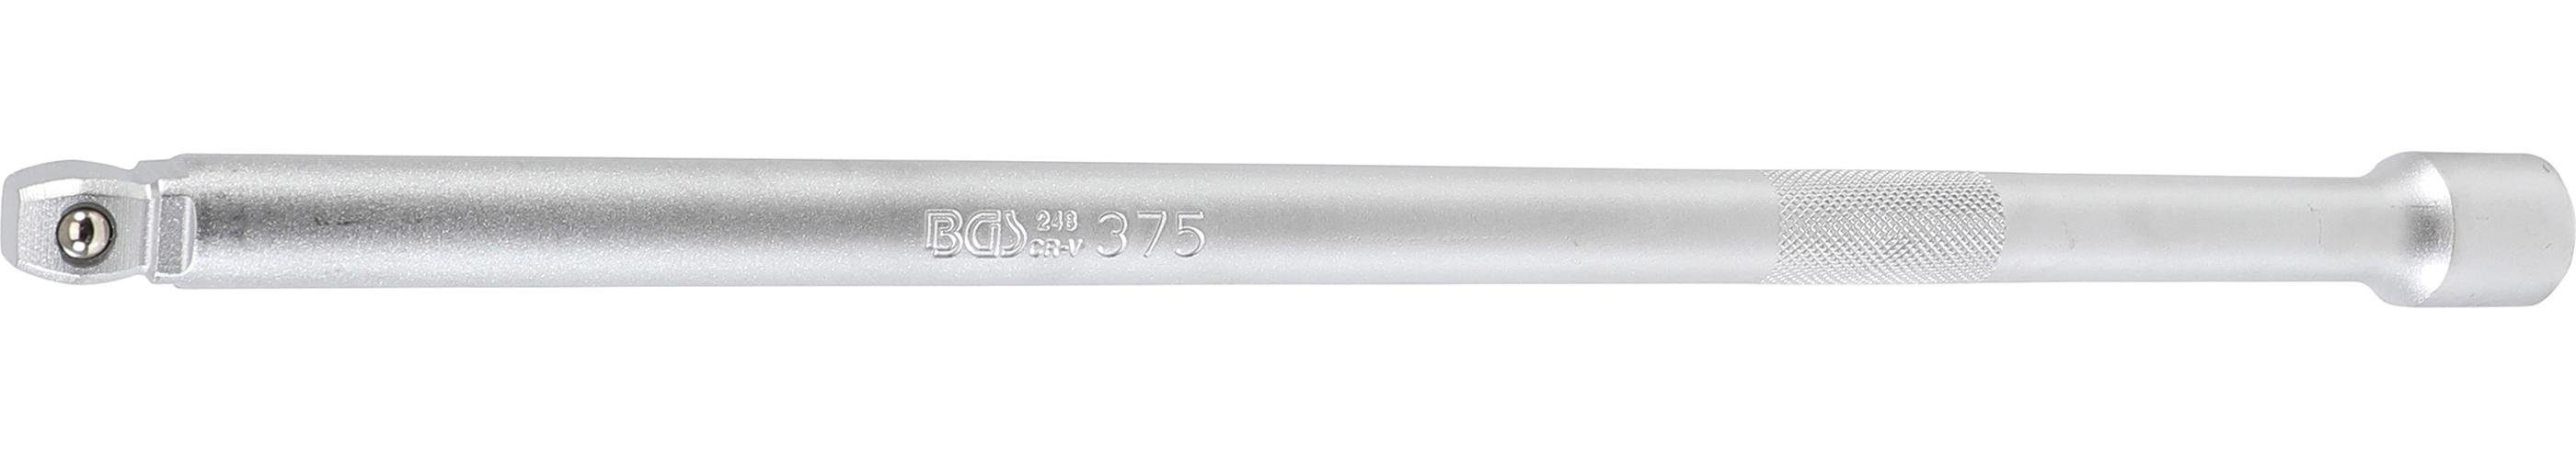 Ratschenringschlüssel mm BGS 12,5 technic Kipp-Verlängerung, mm (1/2), 375